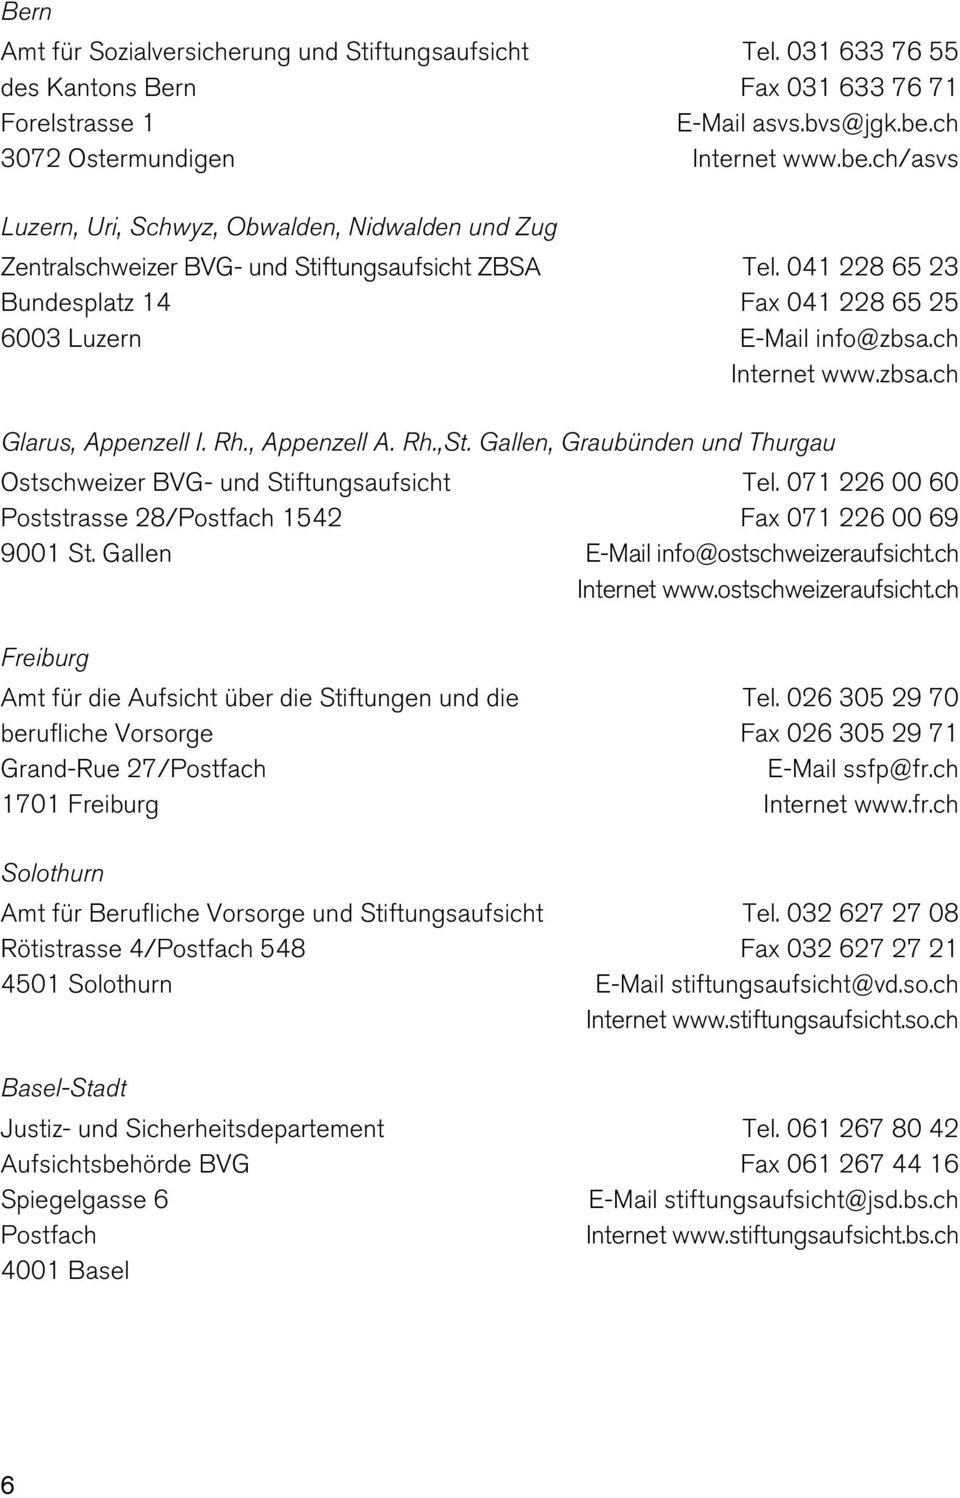 Rh., Appenzell A. Rh.,St. Gallen, Graubünden und Thurgau Ostschweizer BVG- und Stiftungsaufsicht Poststrasse 28/Postfach 1542 9001 St. Gallen Tel.